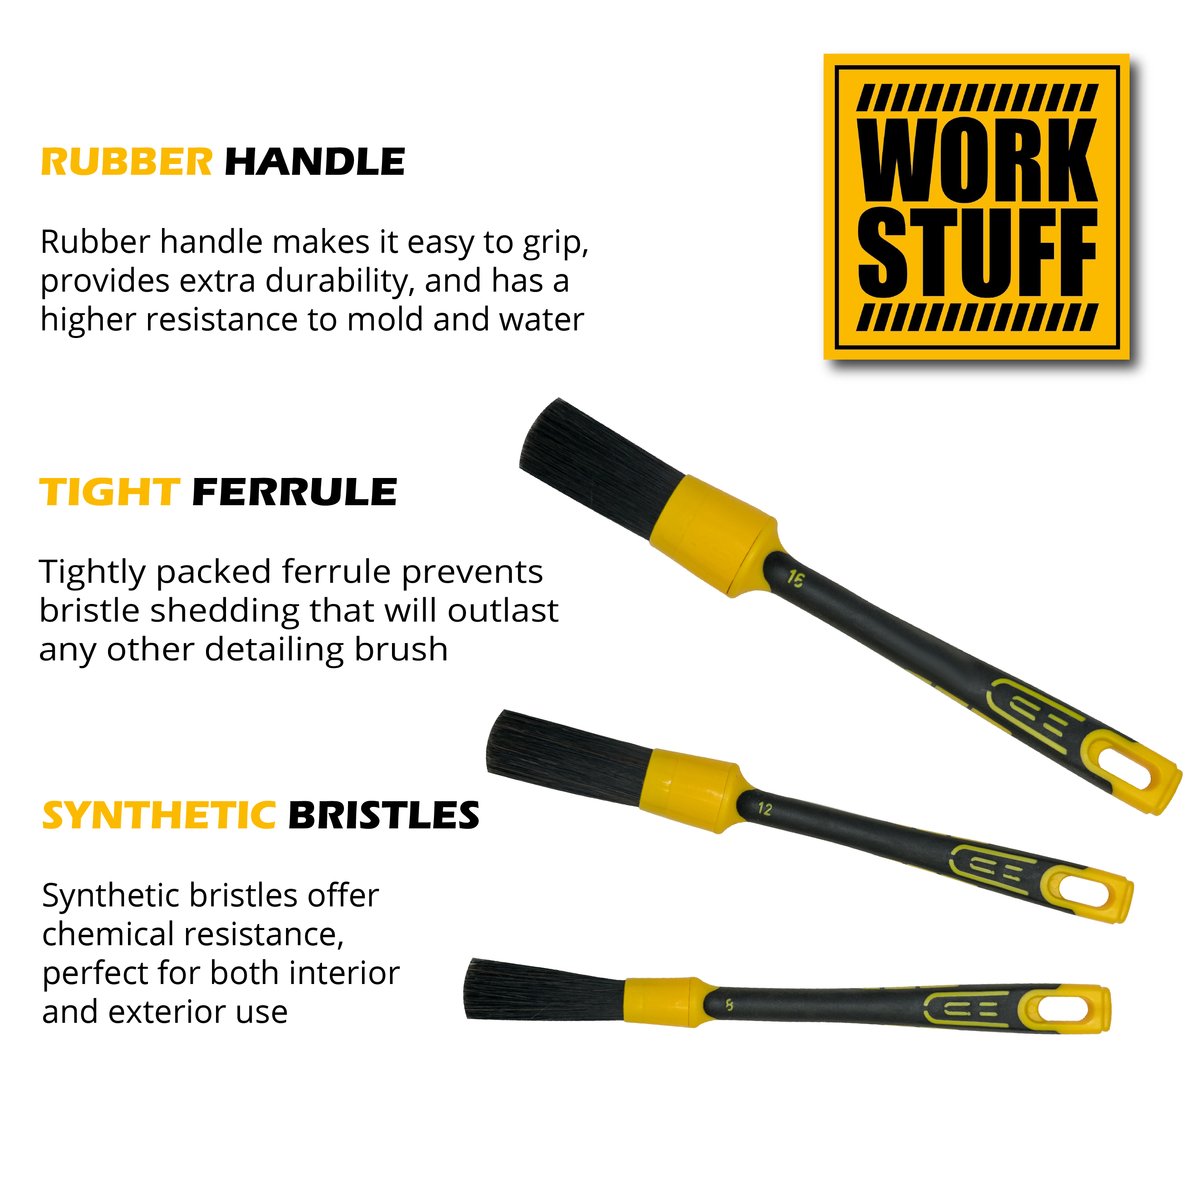 Work Stuff Brush with yellow rubber handle. Perfect wheel brush. Work Stuff Cork Ireland